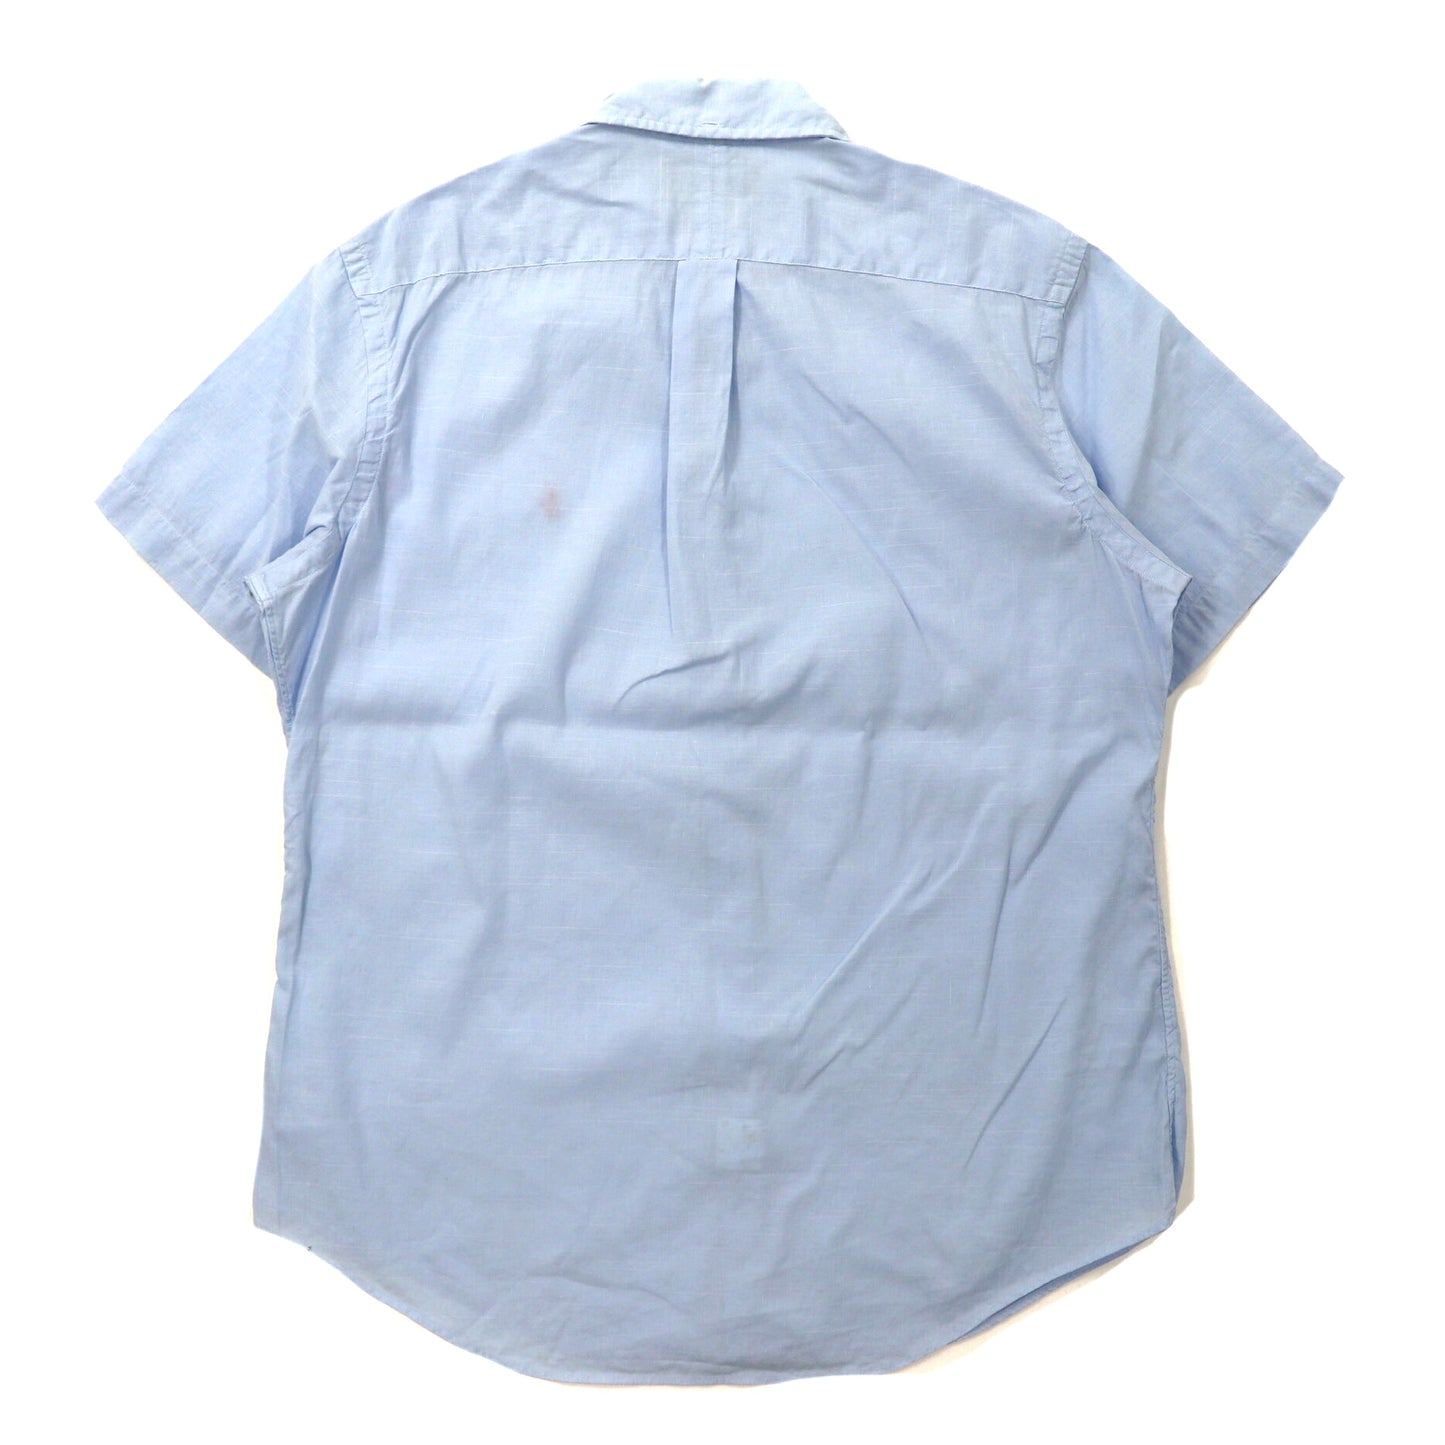 Ralph Lauren 半袖ボタンダウンシャツ XL ブルー リネン CUSTOM FIT スモールポニー刺繍